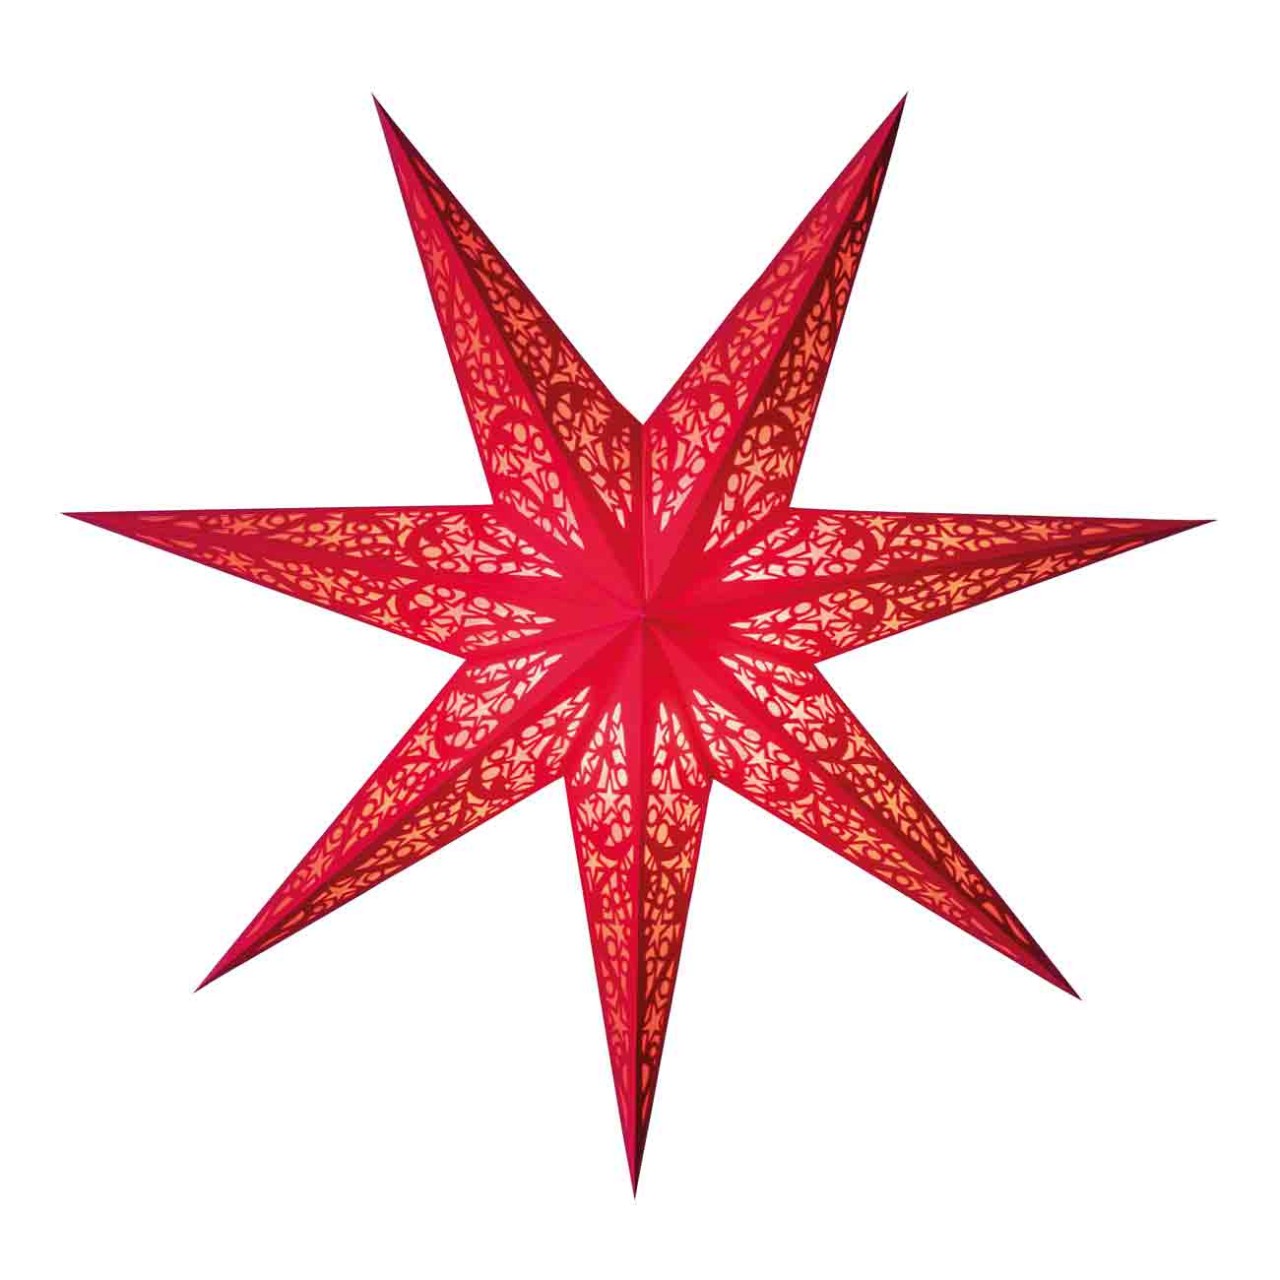 Papiersterne Scherenschnitt lux red size M starlightz